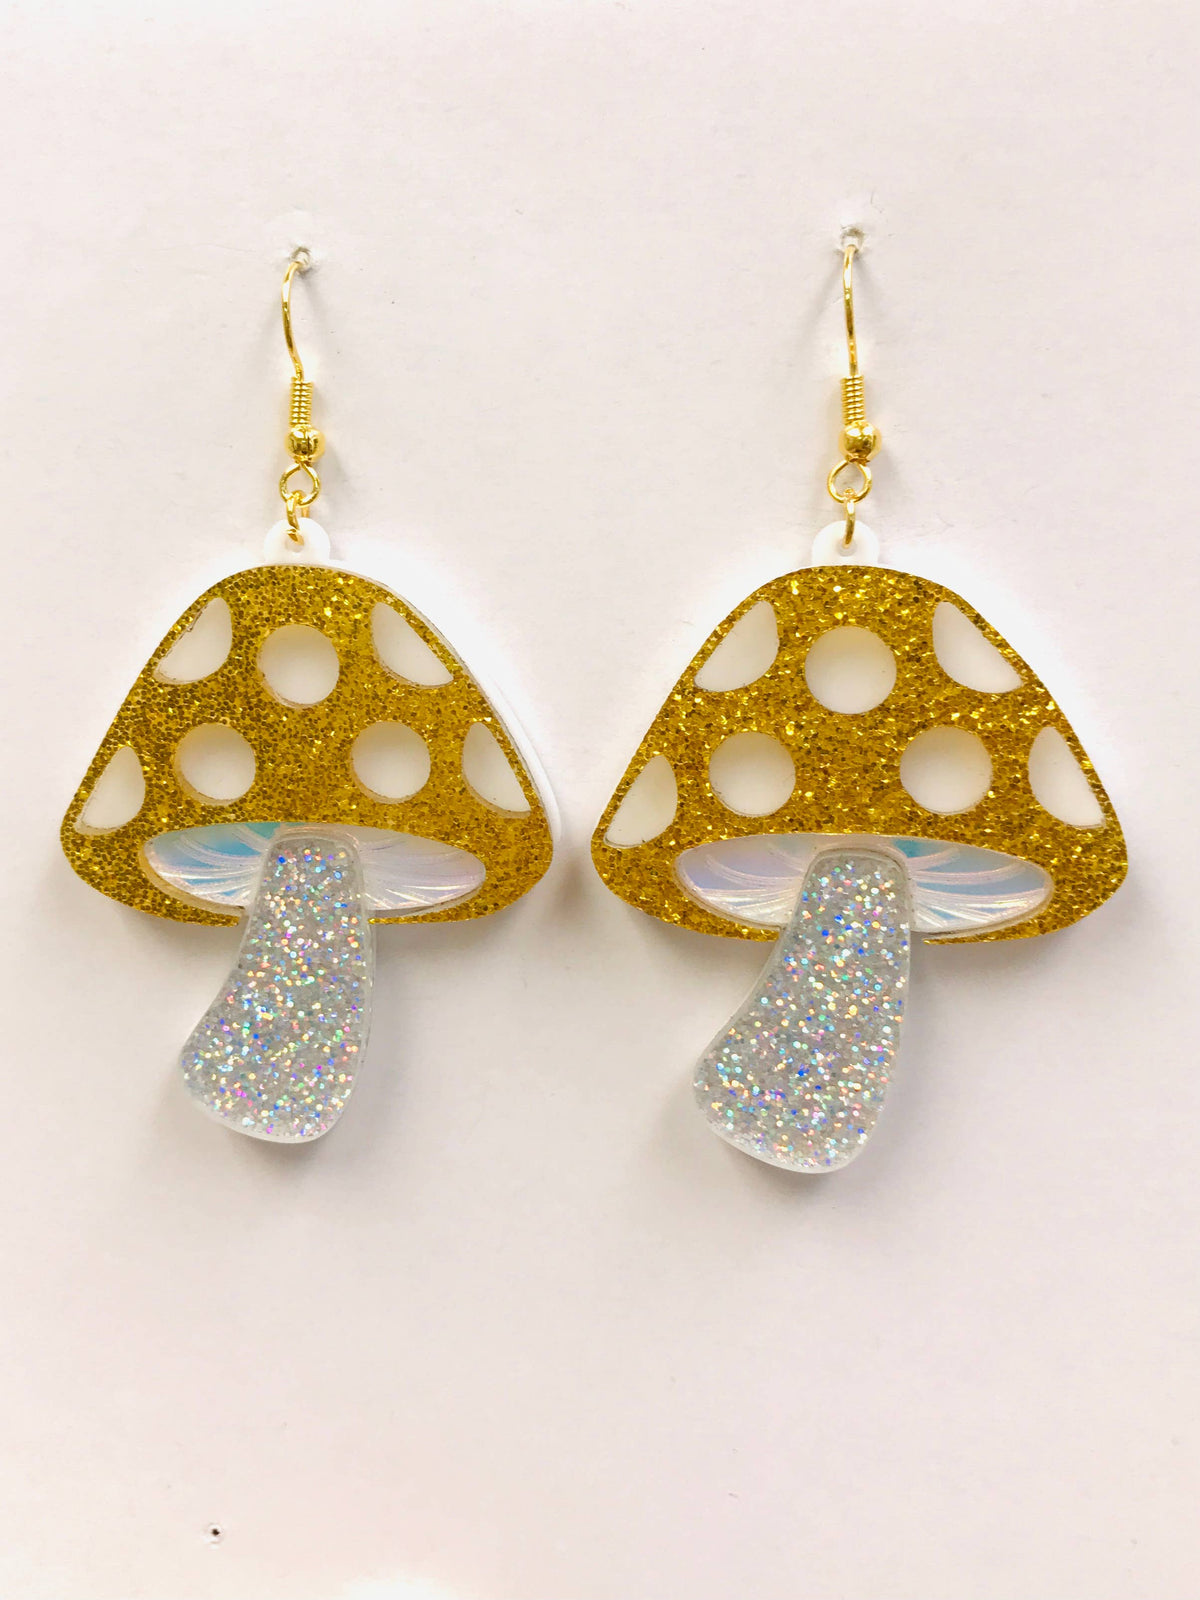 golden acrylic mushroom earrings with sparkles